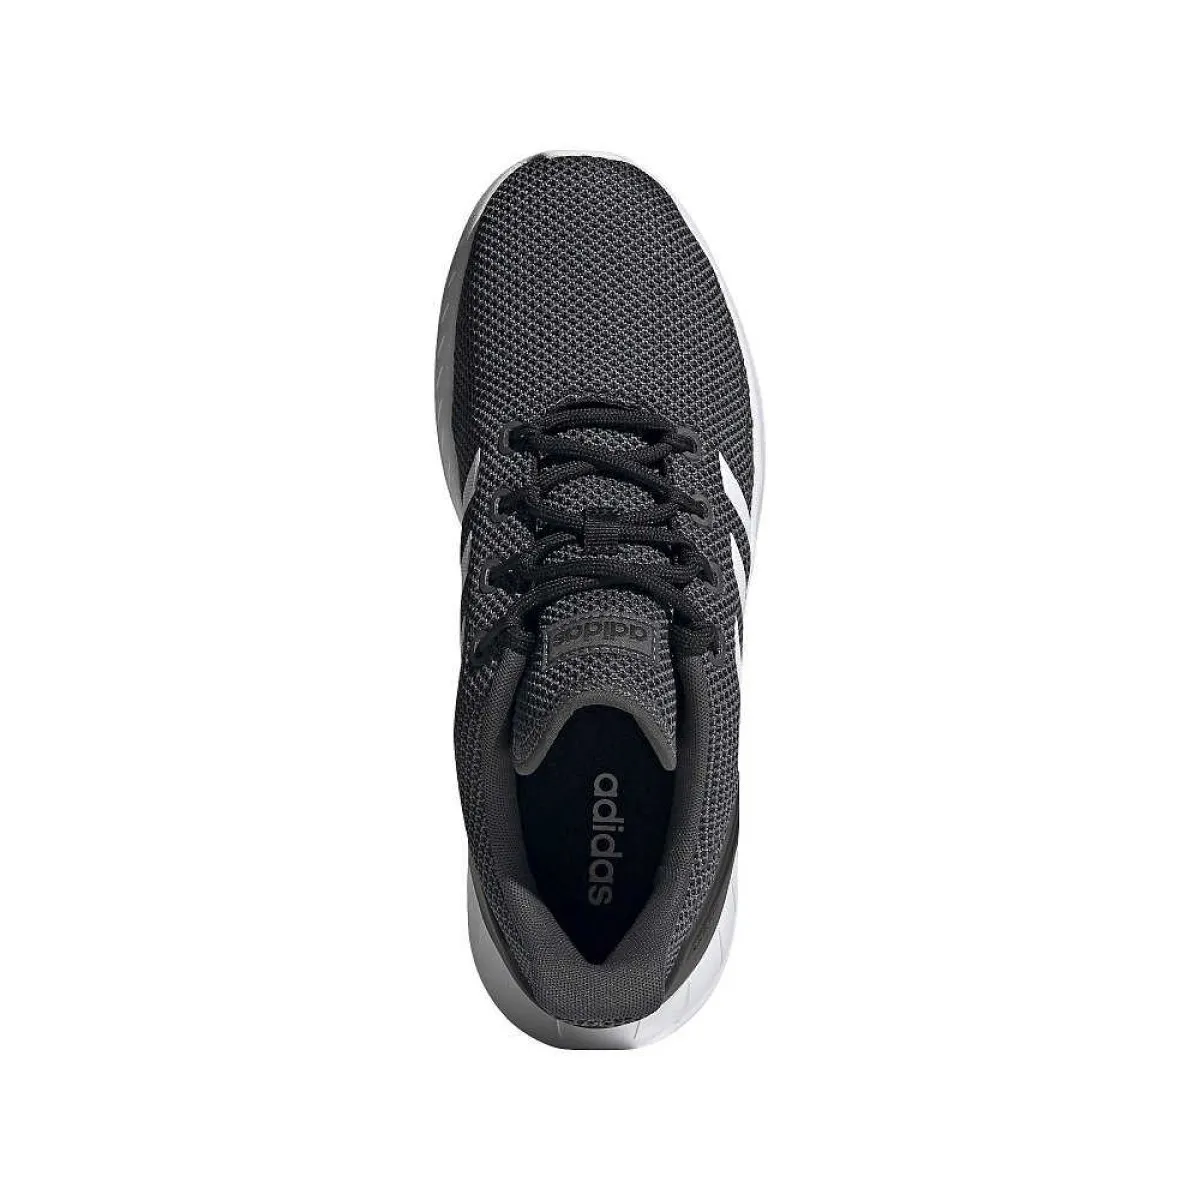 Zapatillas deportivas adidas Questar Flow negras con rayas blancas